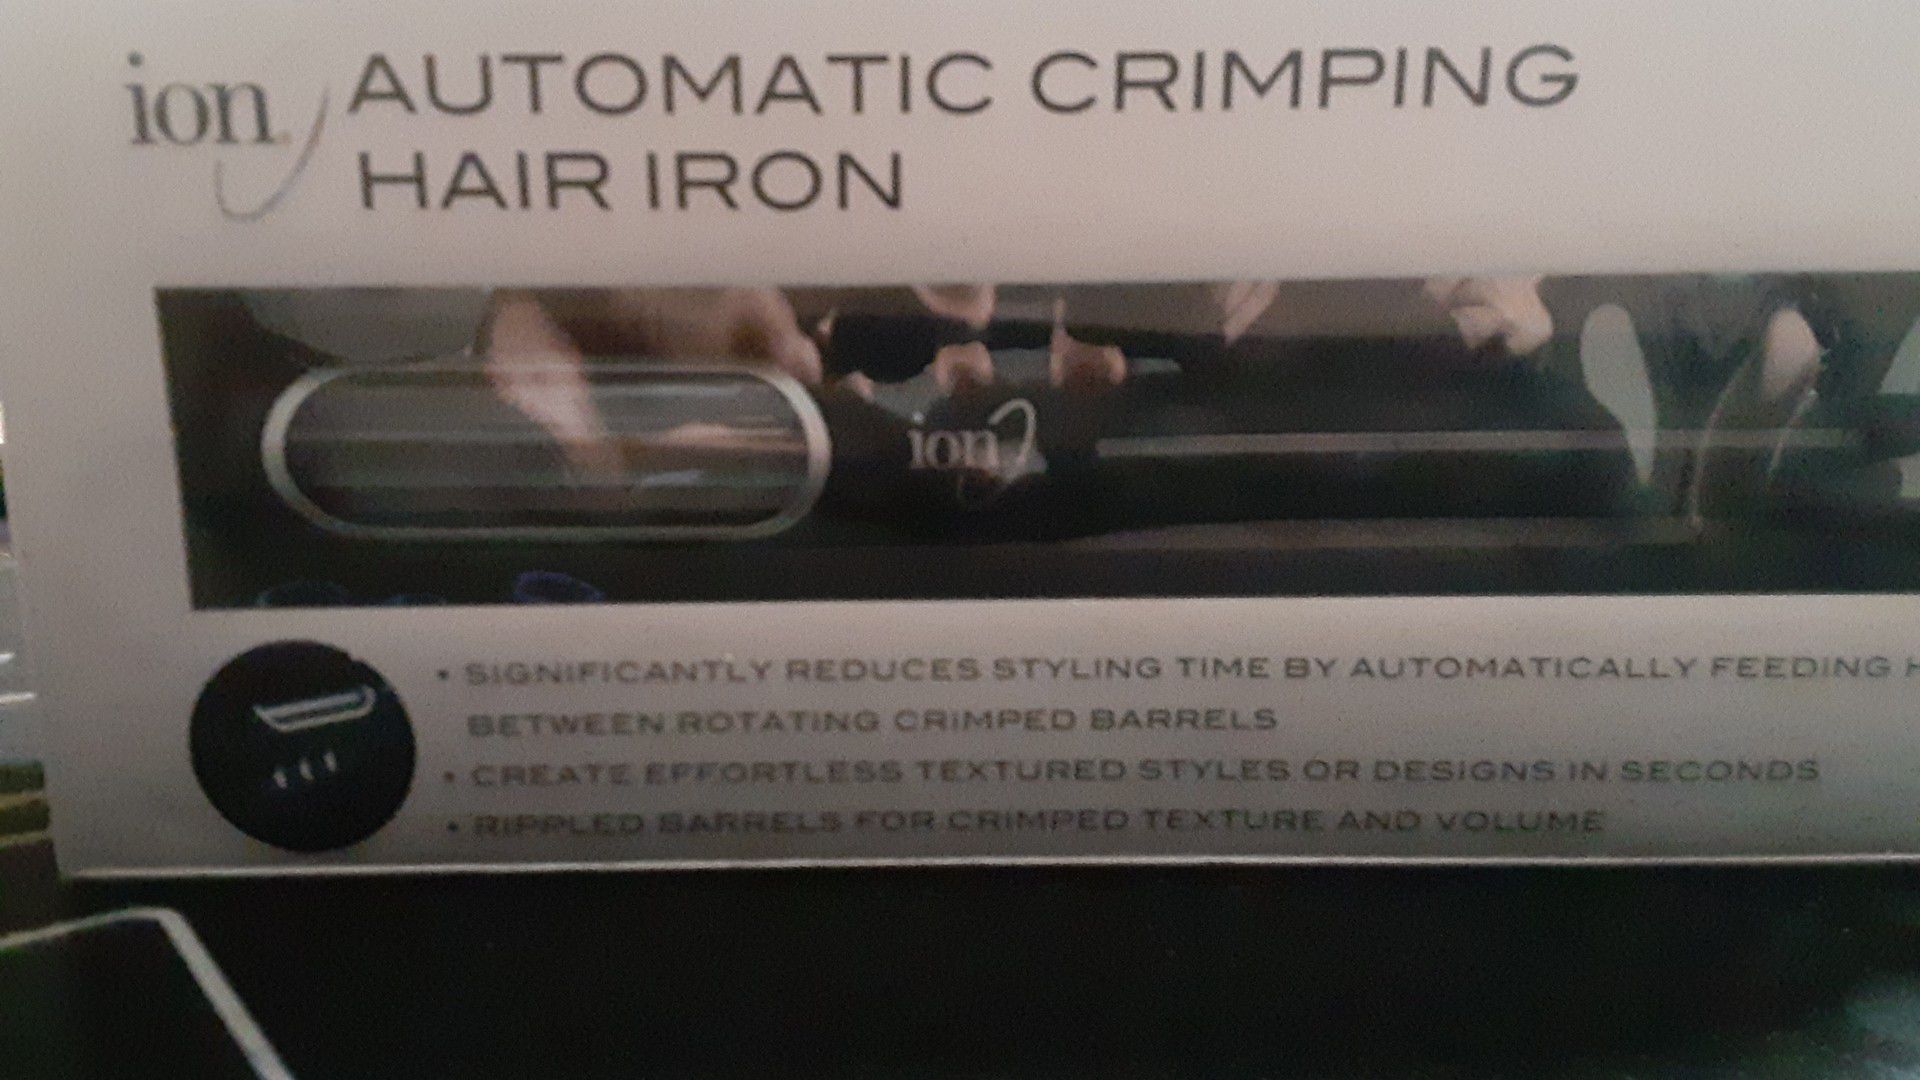 Crimping hair iron